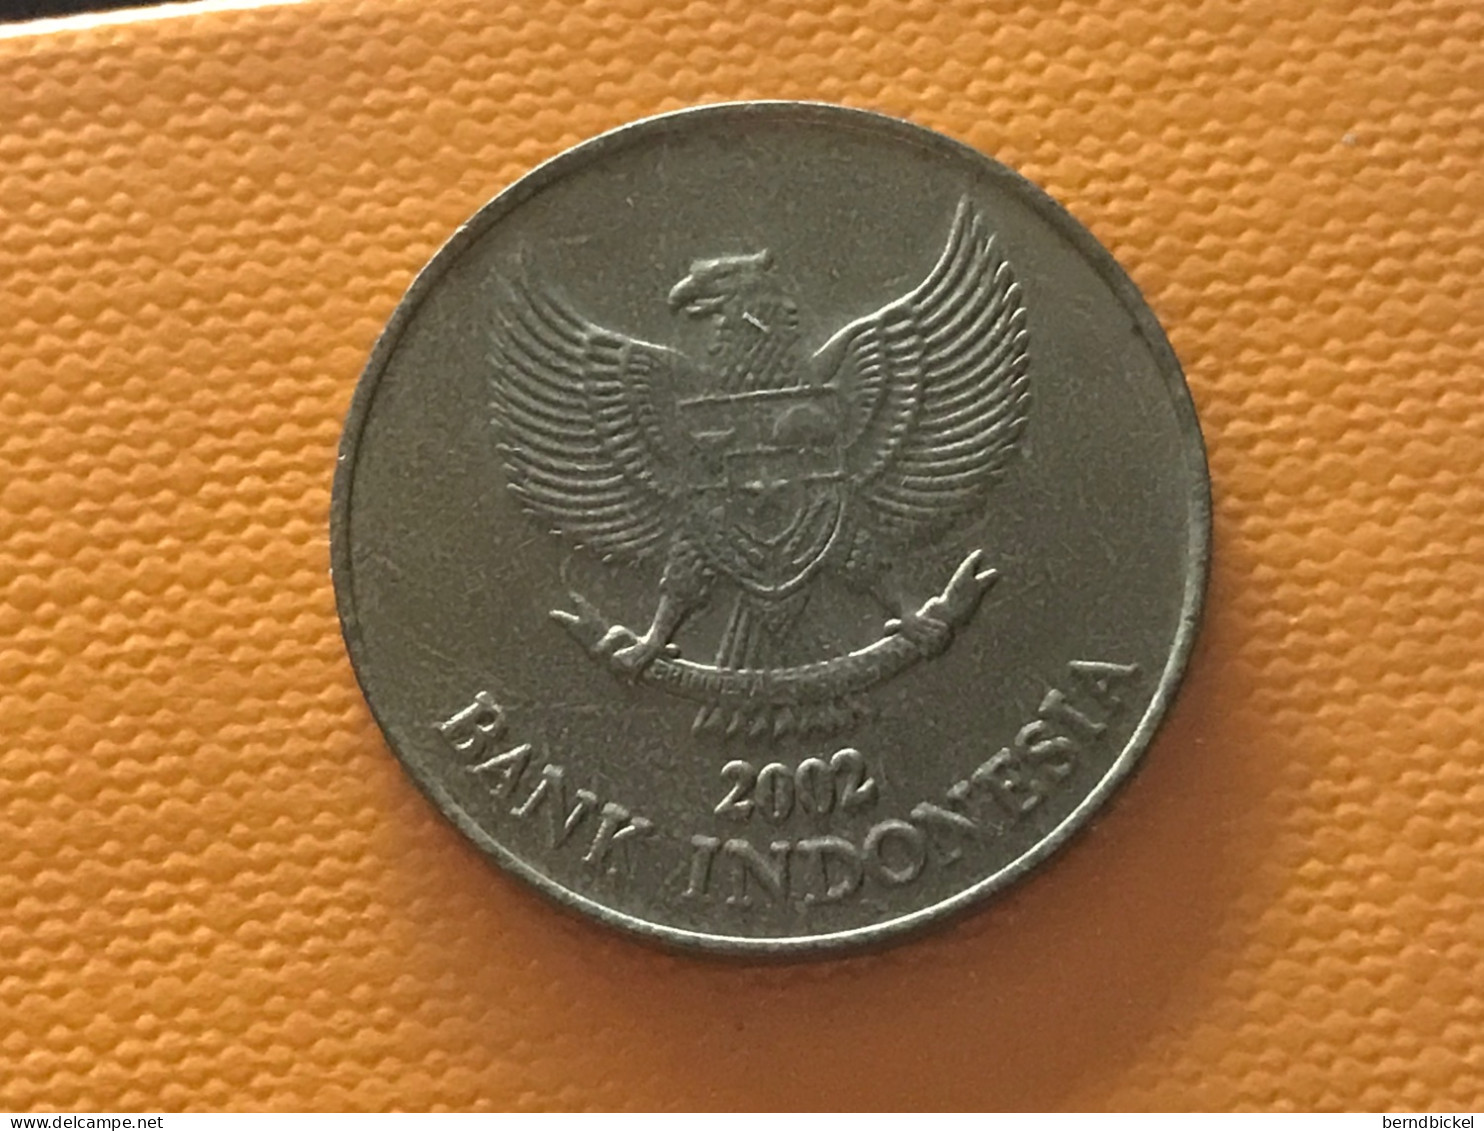 Münze Münzen Umlaufmünze Indonesien 500 Rupien 2002 - Indonésie